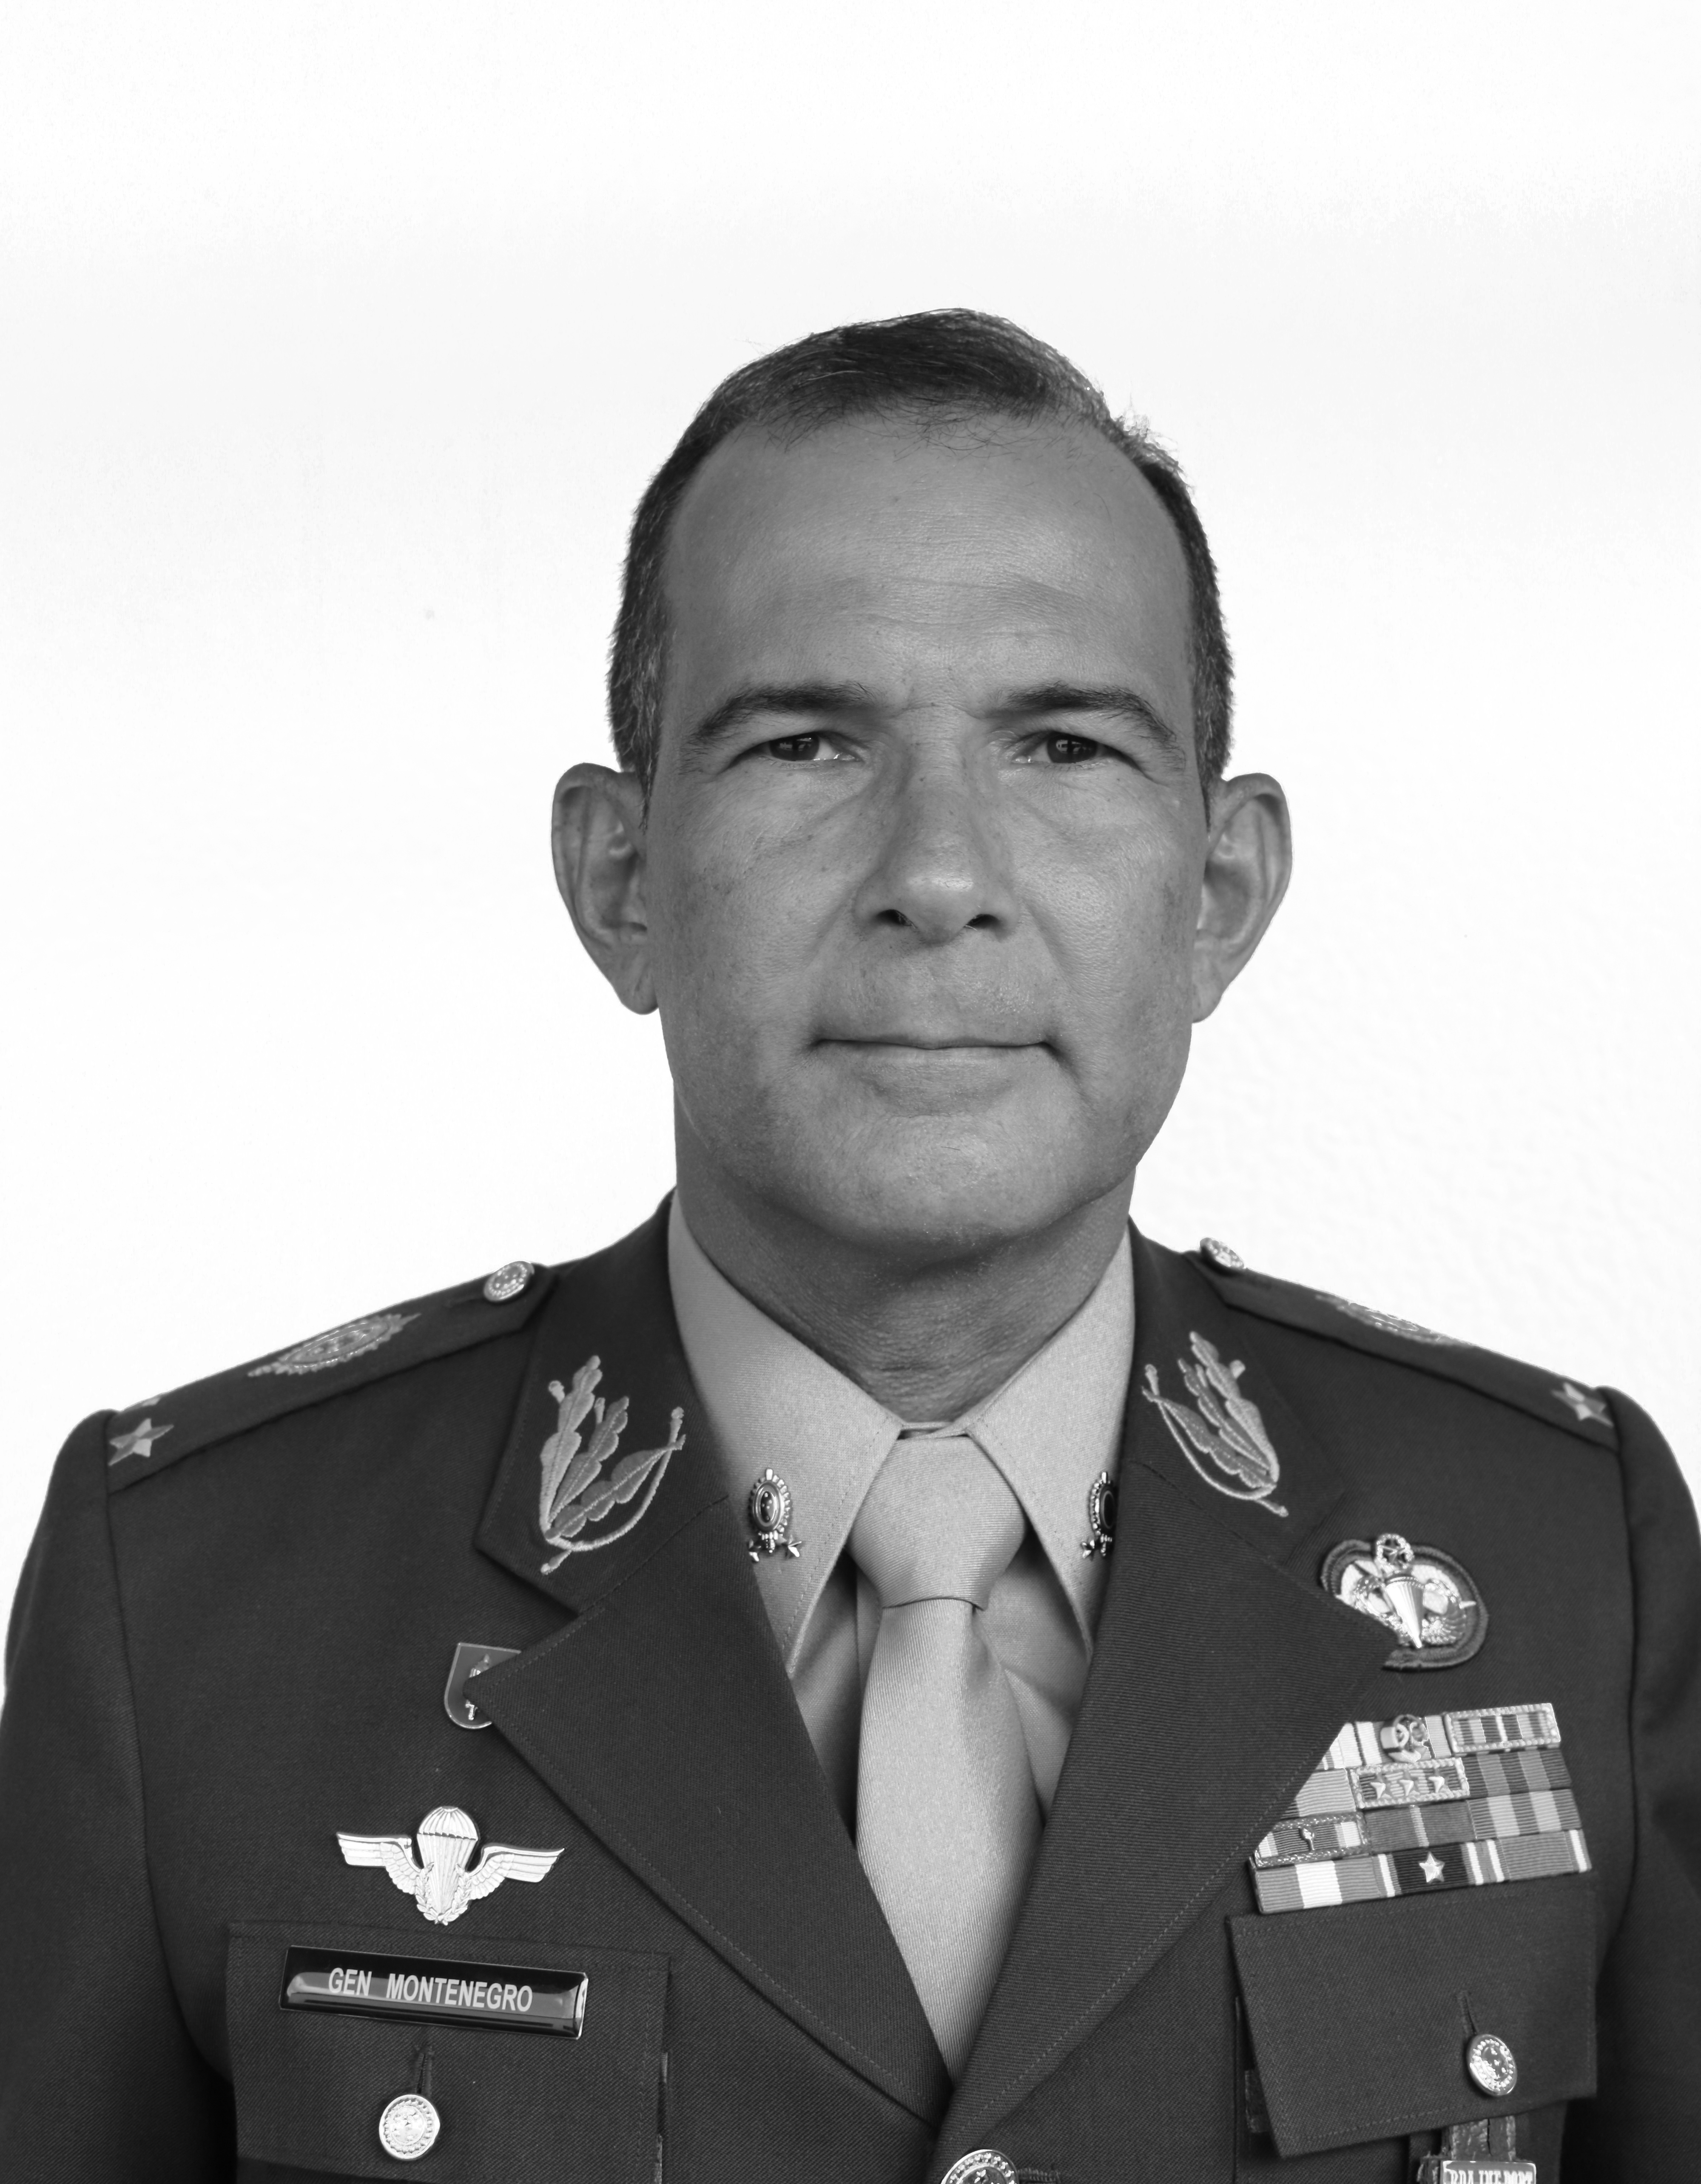 33. Gen Montenegro